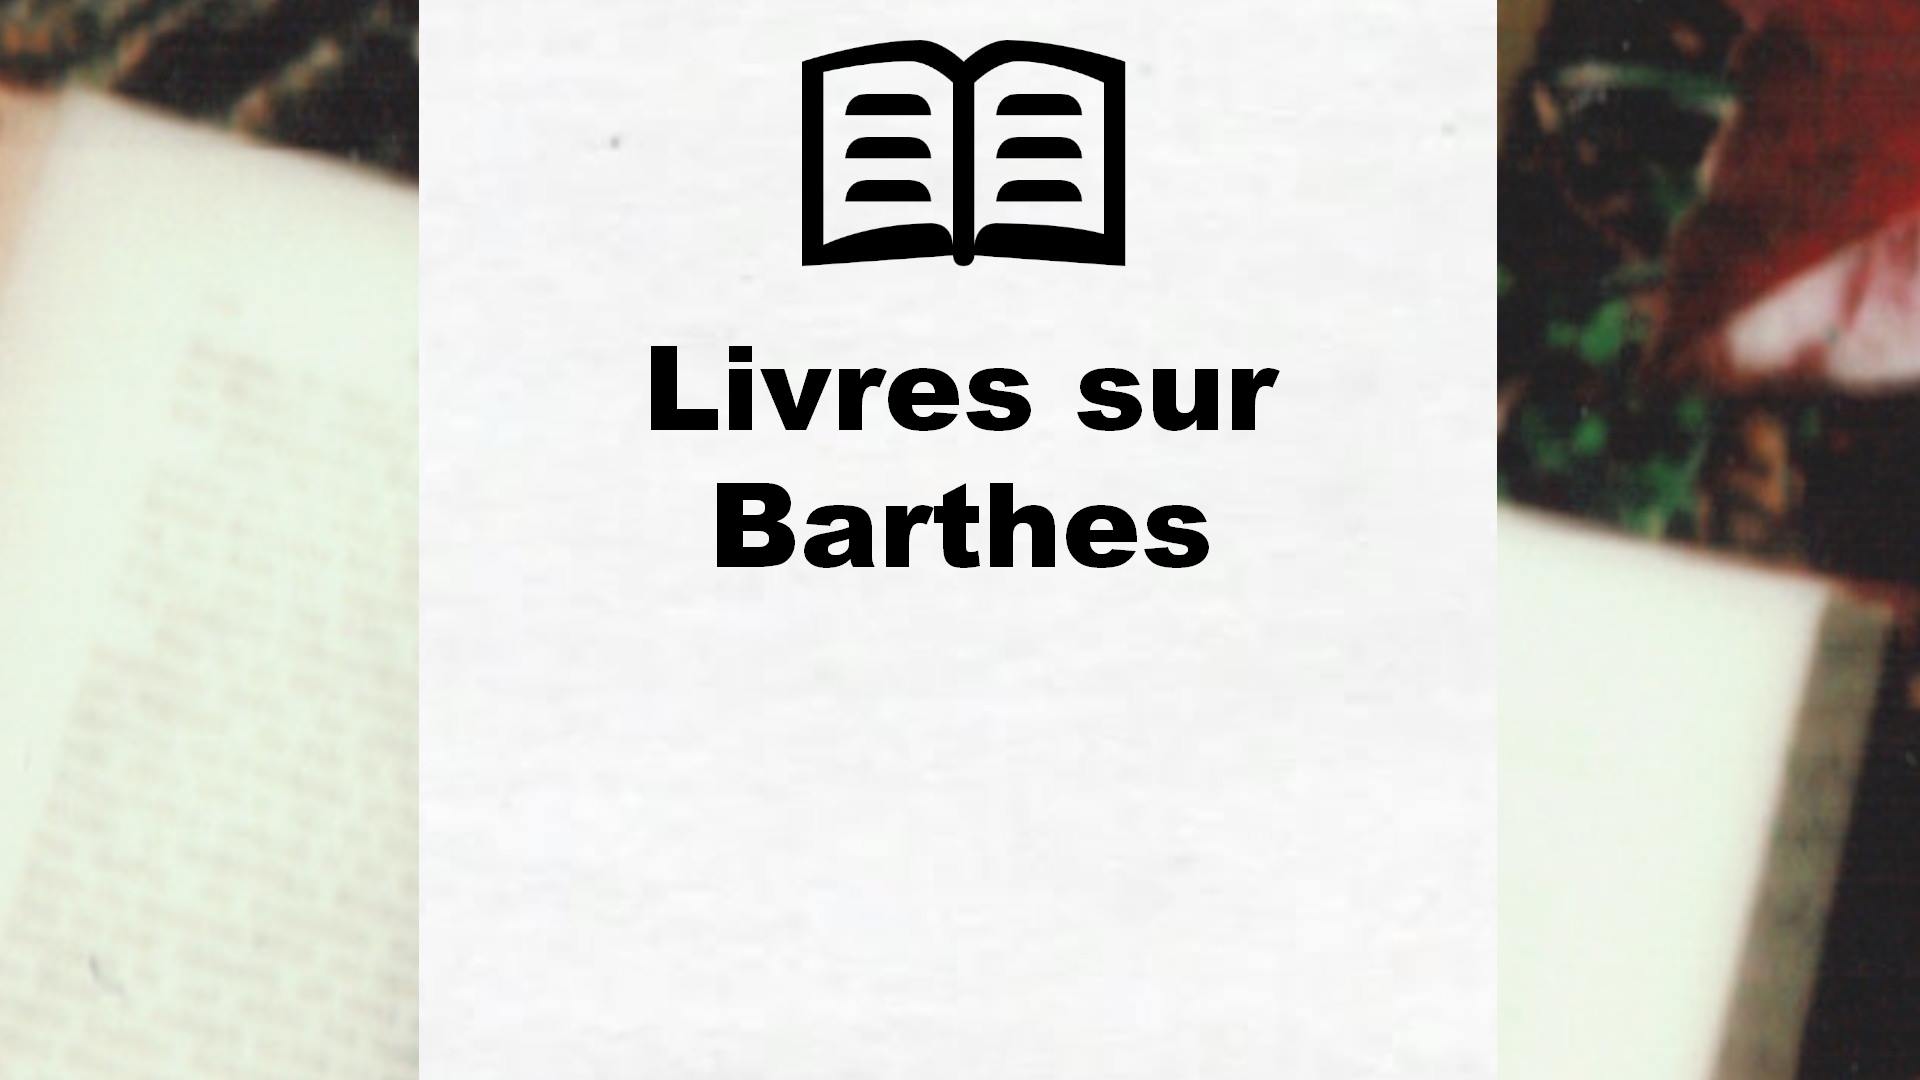 Livres sur Barthes